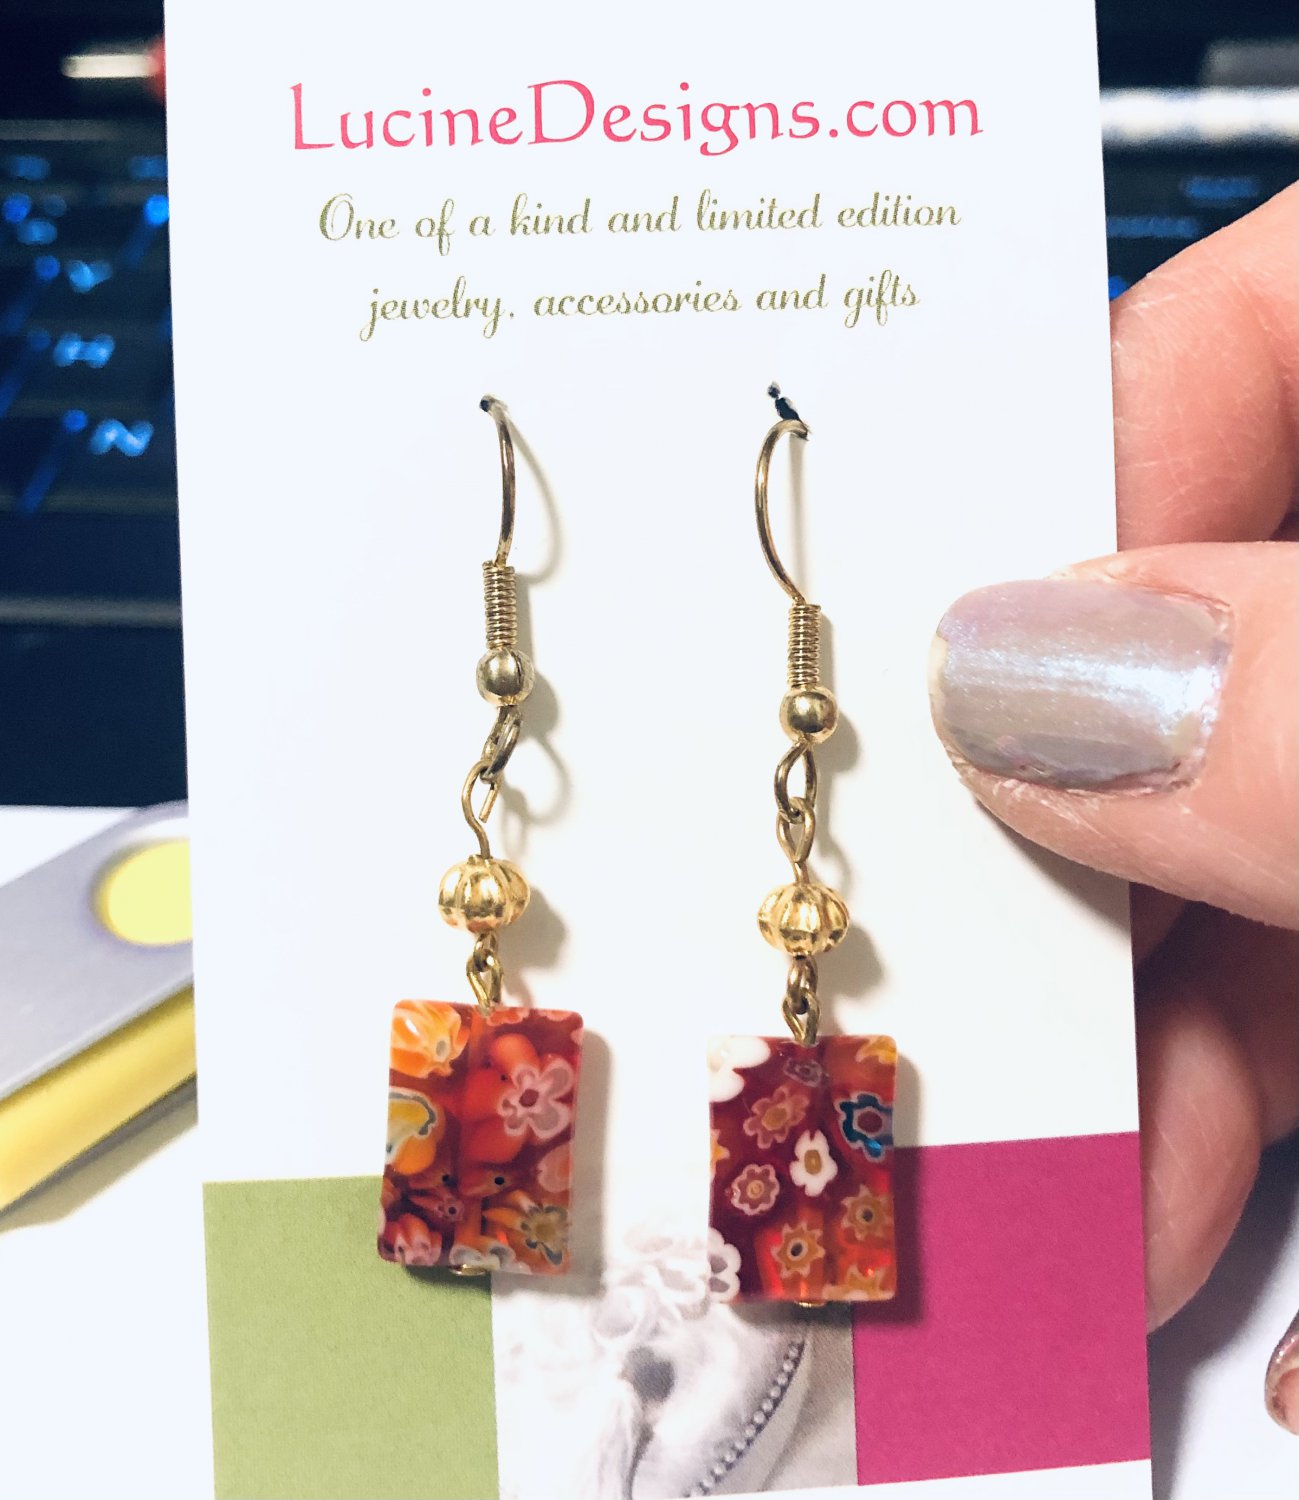 Red linear earrings, #3629E, linear earrings, BFF gifts